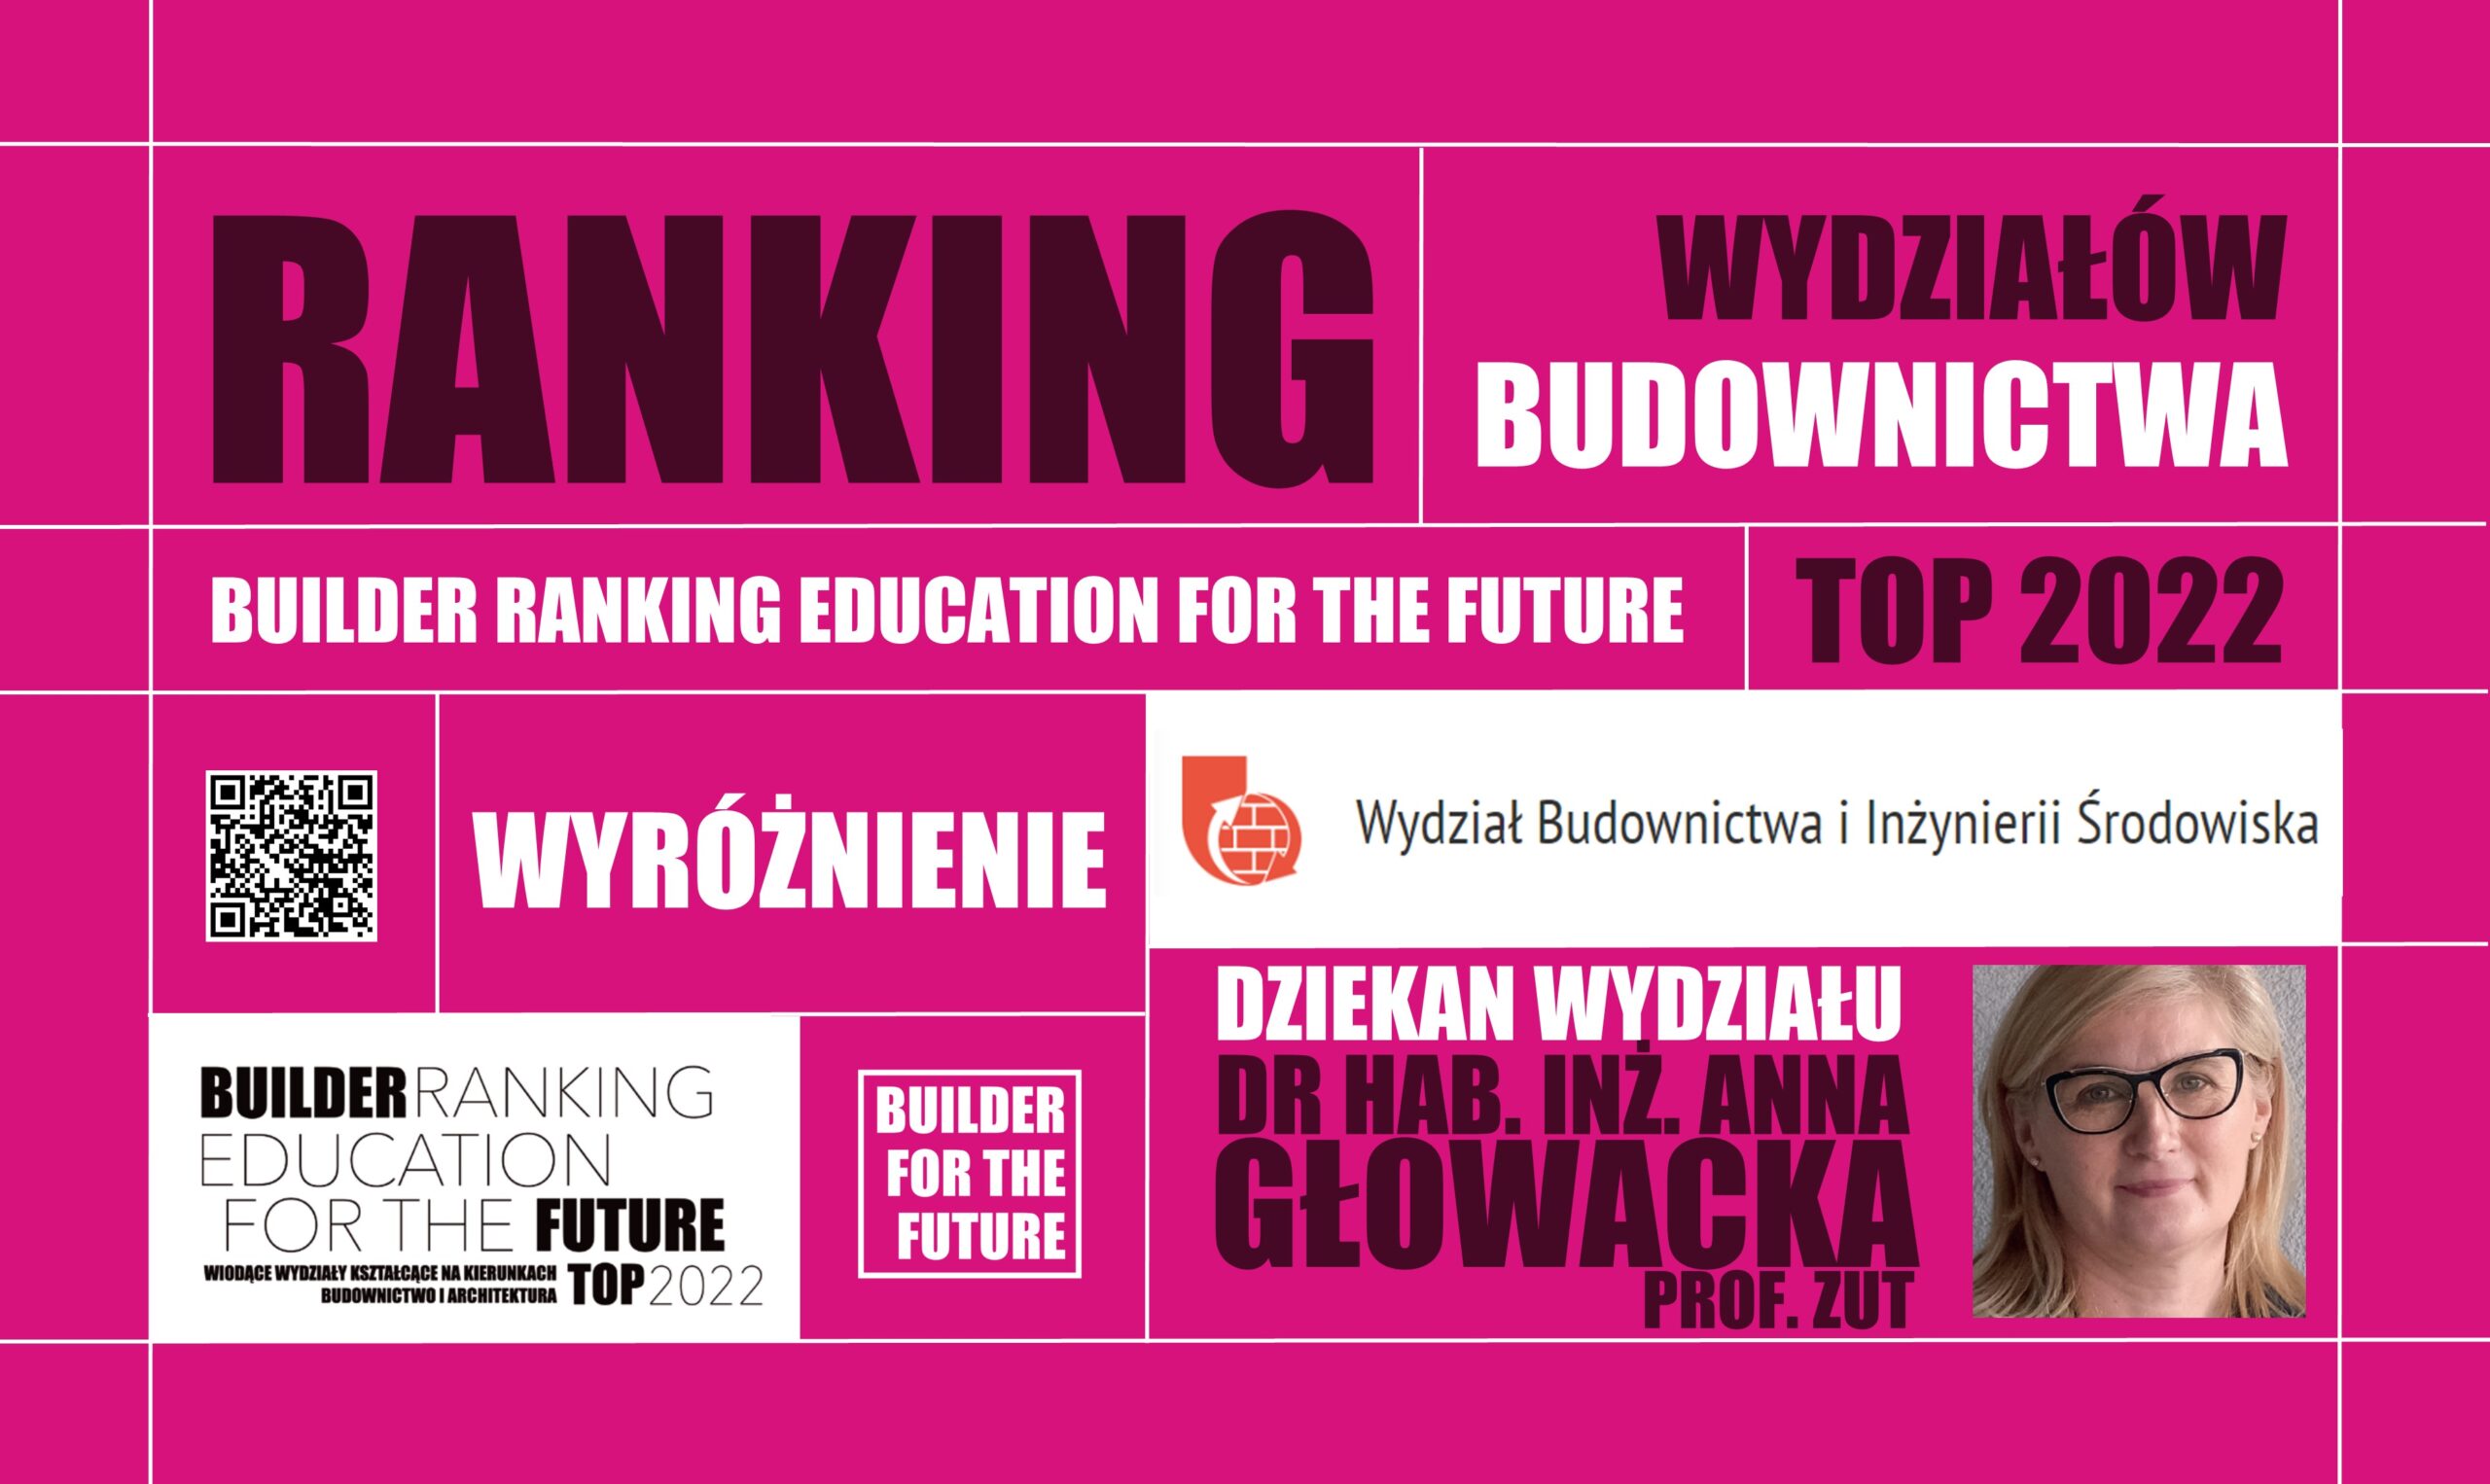 WYRÓŻNIENIE W RANKINGU WYDZIAŁÓW BUDOWNICTWA – BUILDER RANKING EDUCATION FOR THE FUTURE TOP 2022